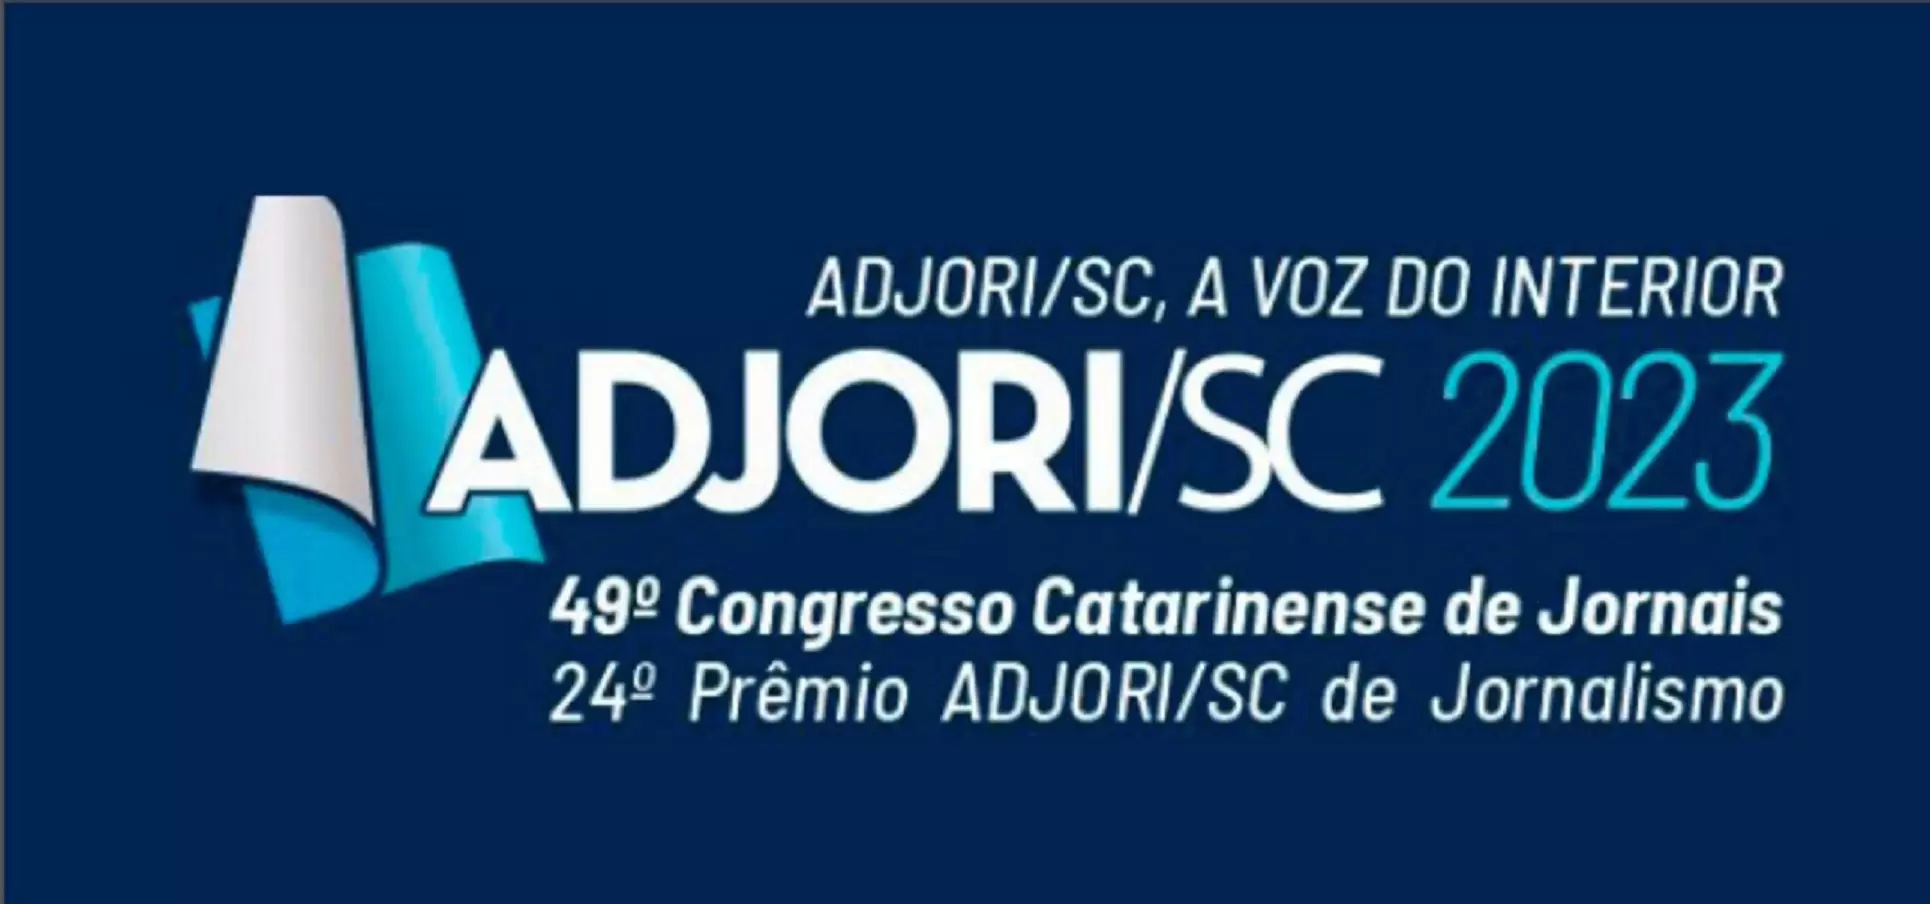 49º Congresso Catarinense de Jornais será em outubro